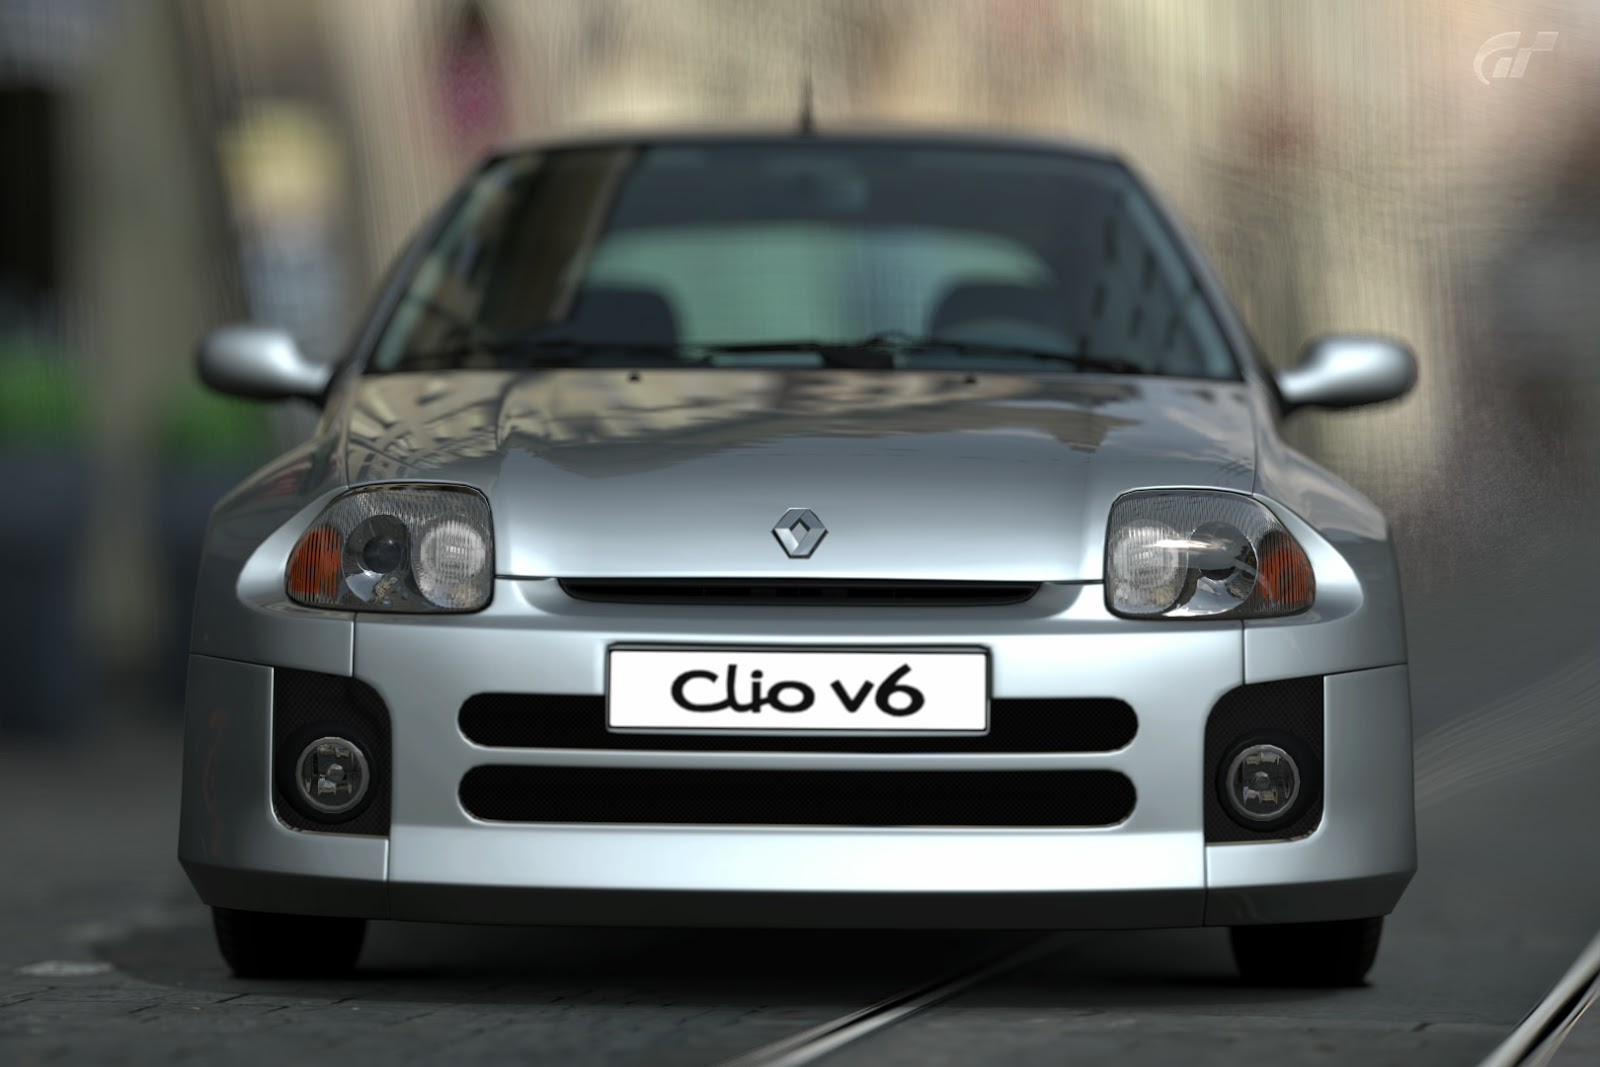 2000 Renault Clio V6